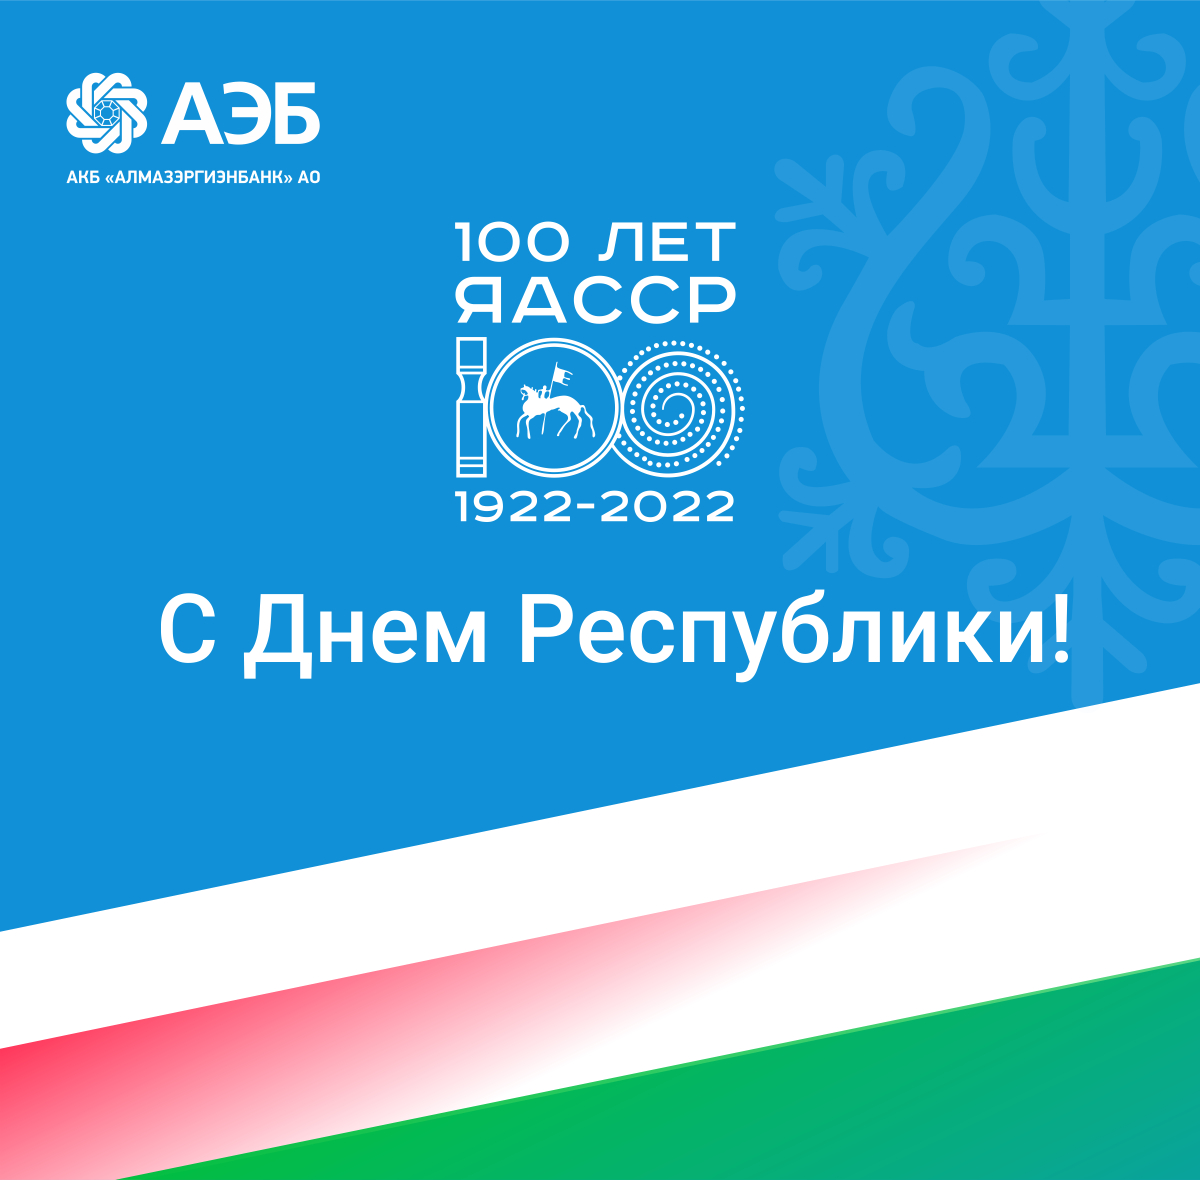 Якутский банк поздравляет со 100-летием ЯАССР